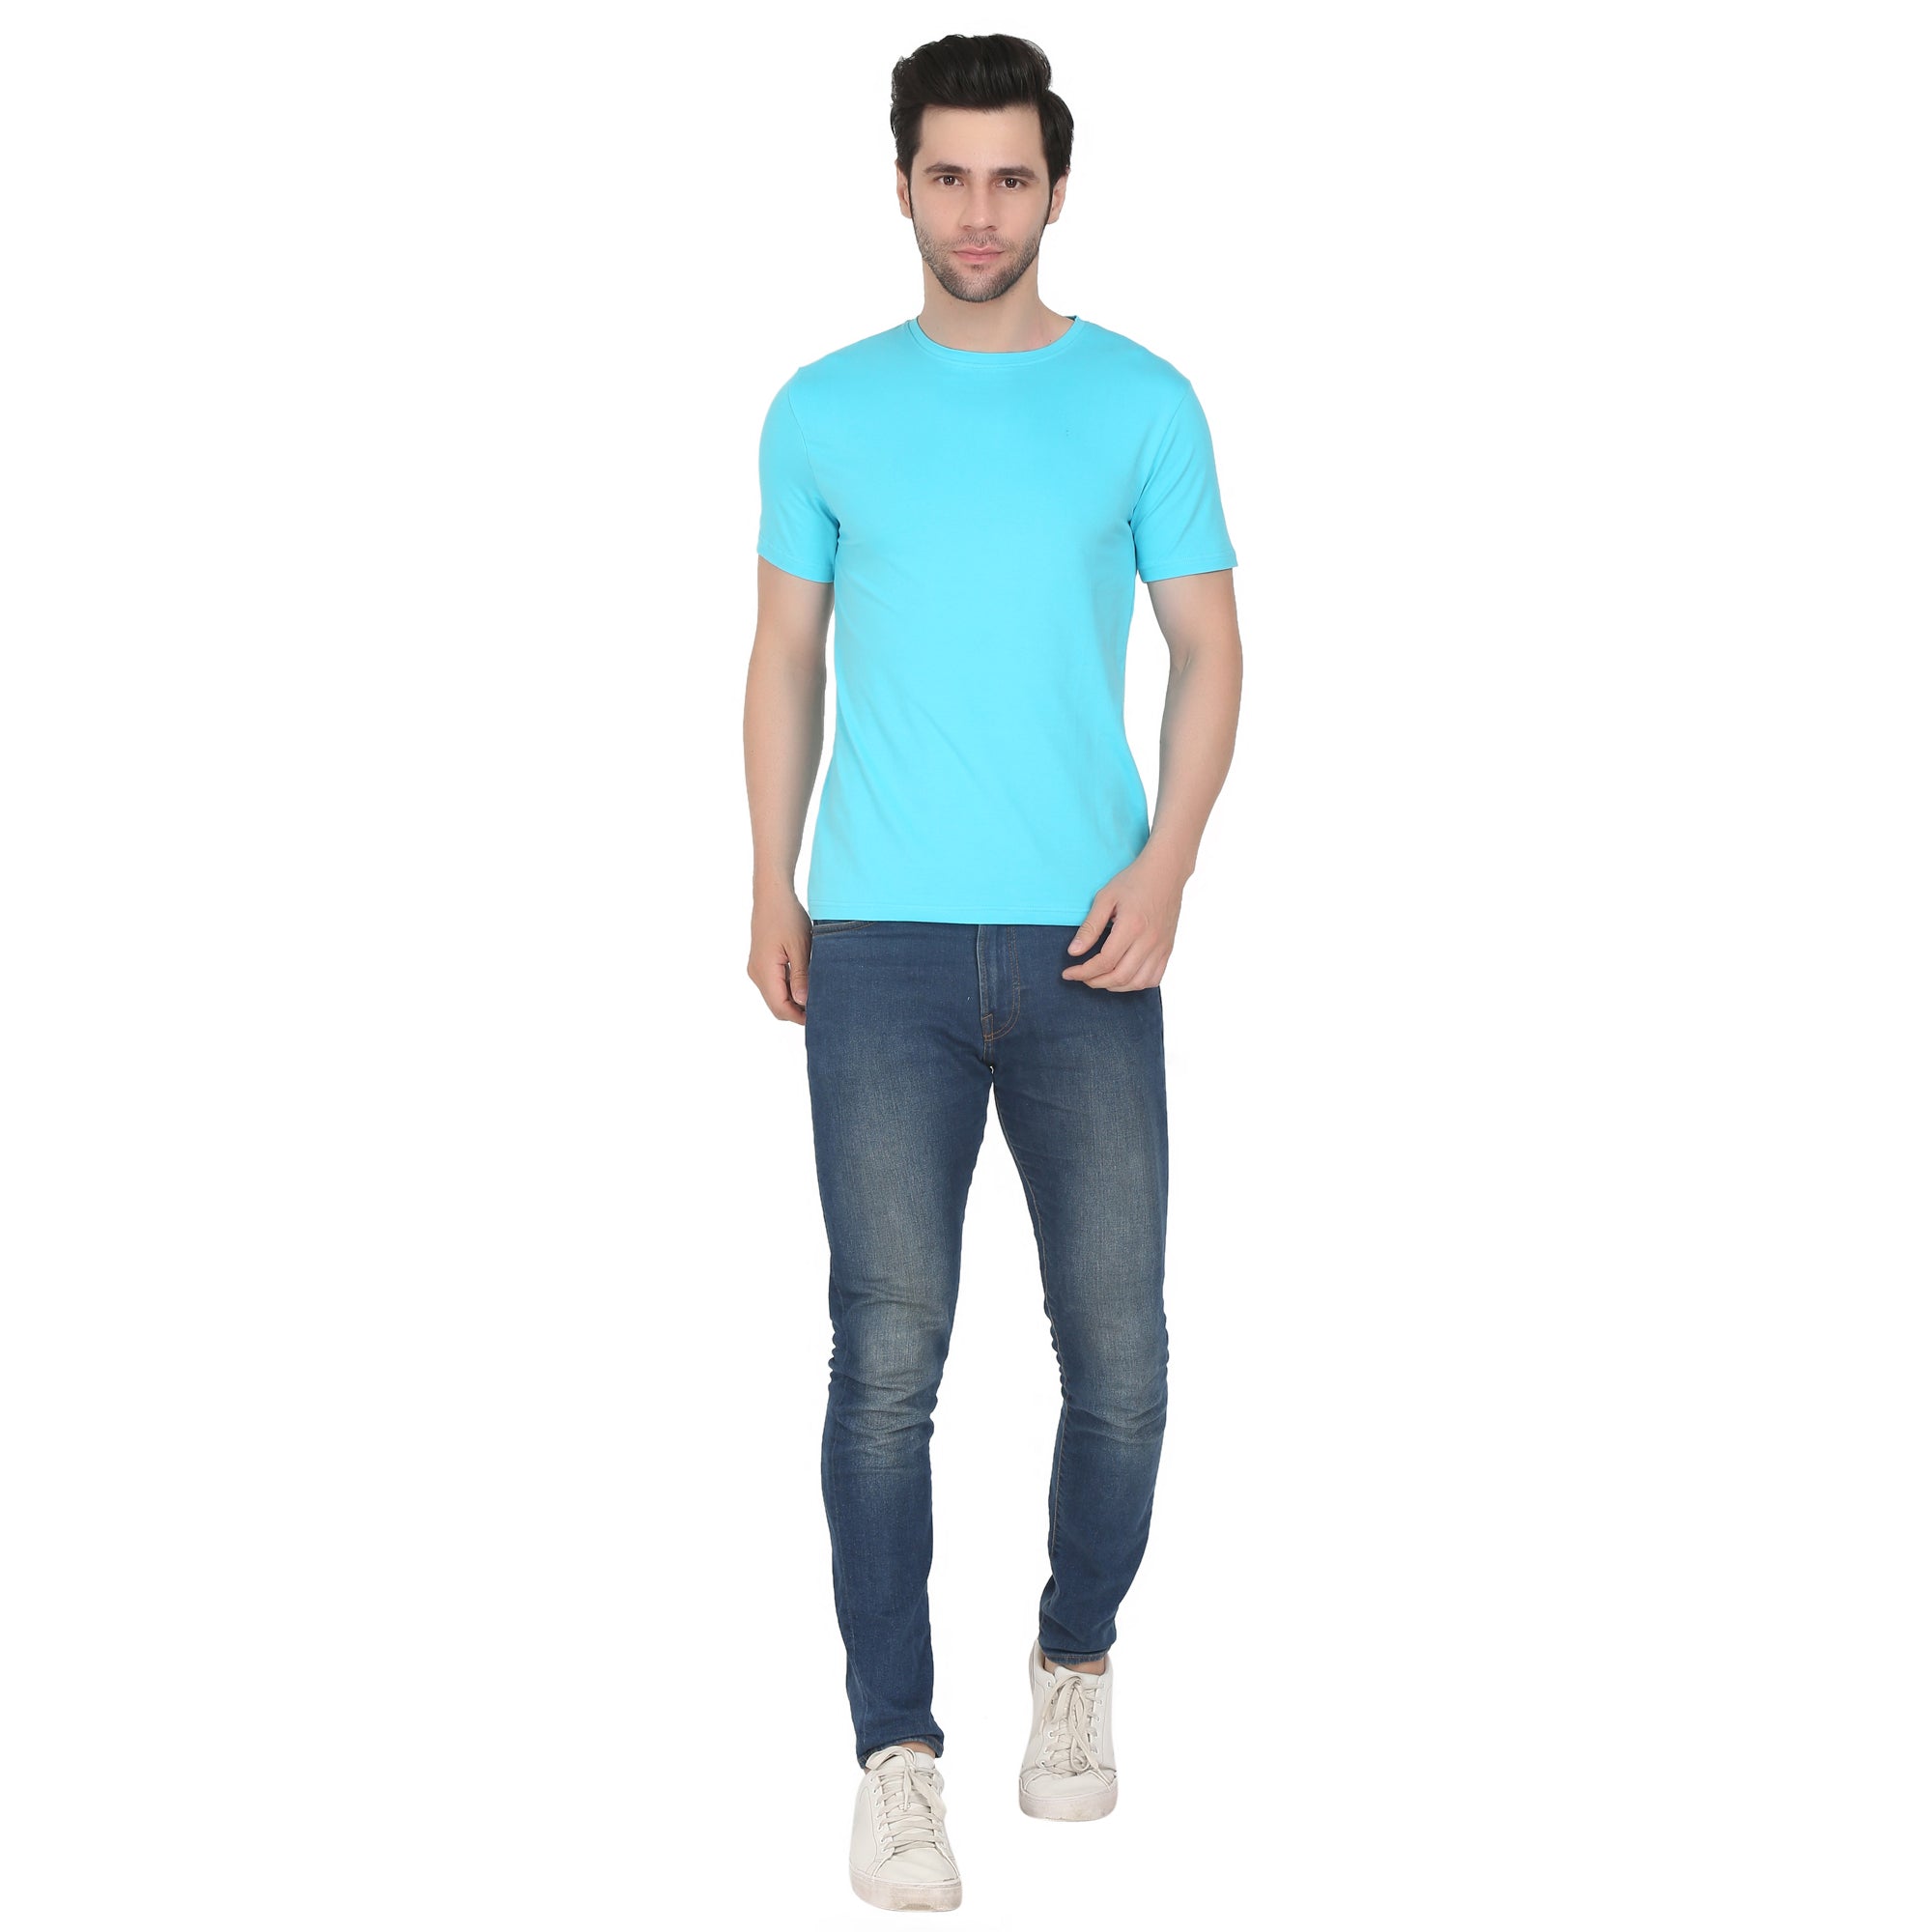 Men Four Way Stretch Cotton Plain T-shirt - Sky Blue Colour